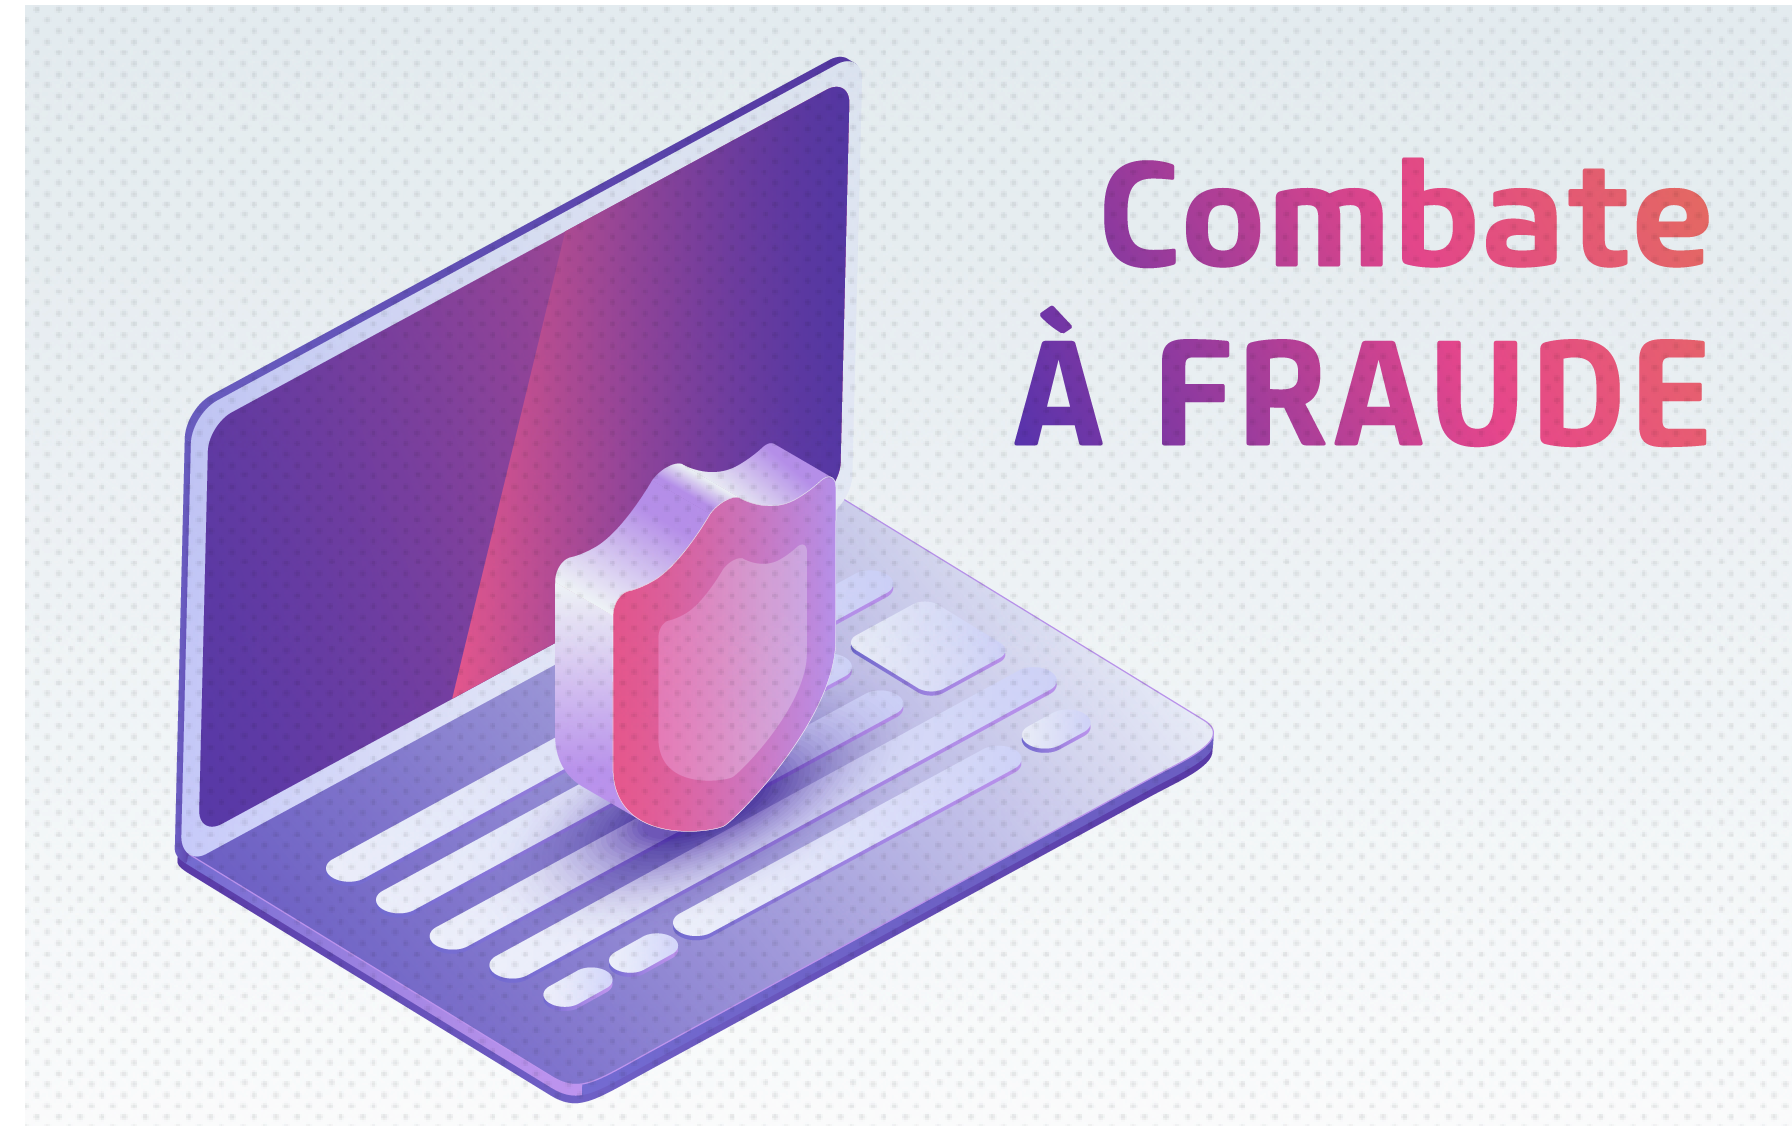 Combate à fraude a quatro mãos: potencialize seus resultados